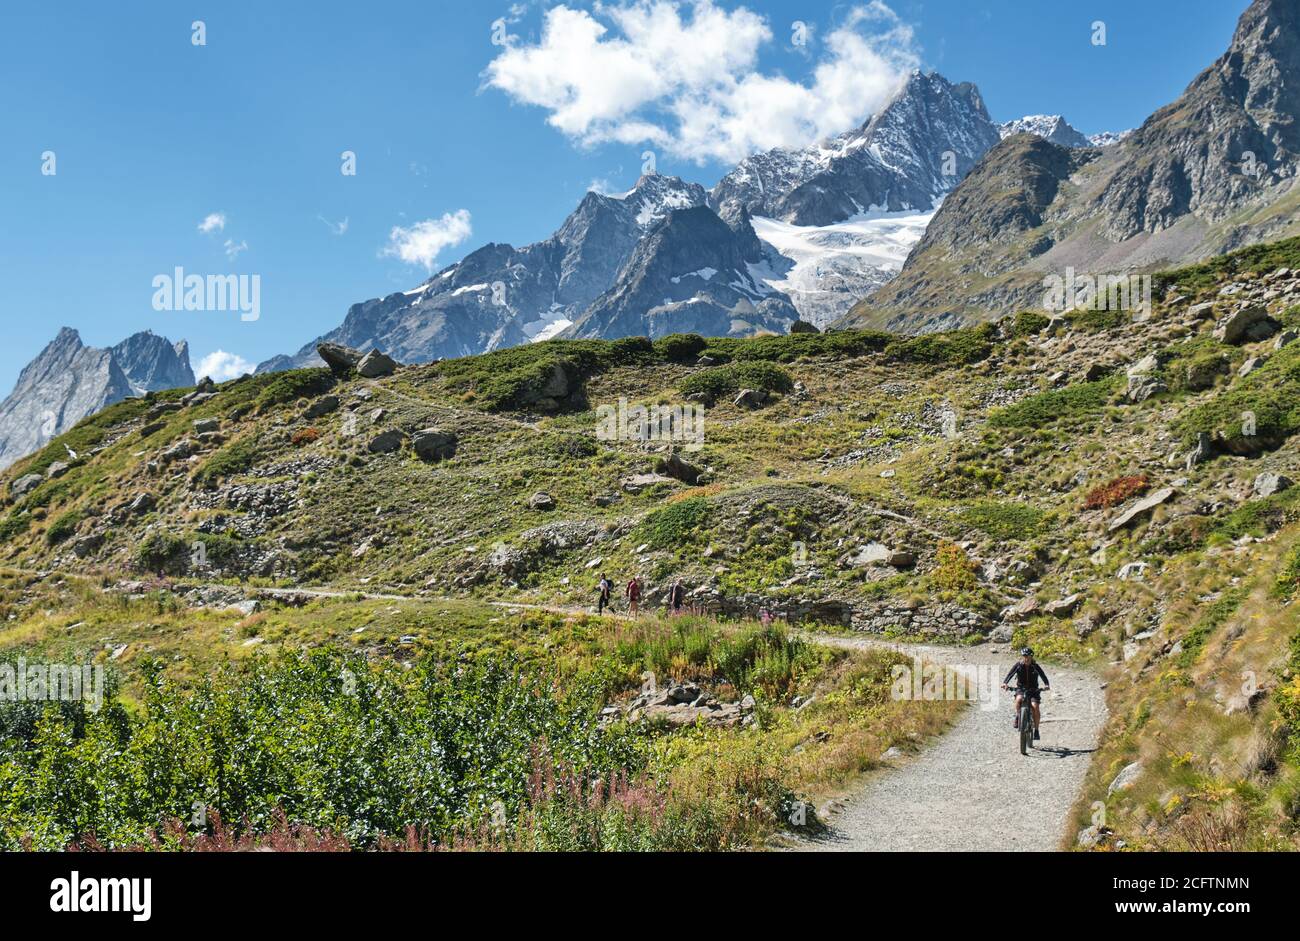 Menschen, die Sport aus dem Mont Blanc-Massiv ausüben. Panoramablick auf den Vinschgau und den Combal See im Sommer, Courmayeur, Aosta, Italien Stockfoto